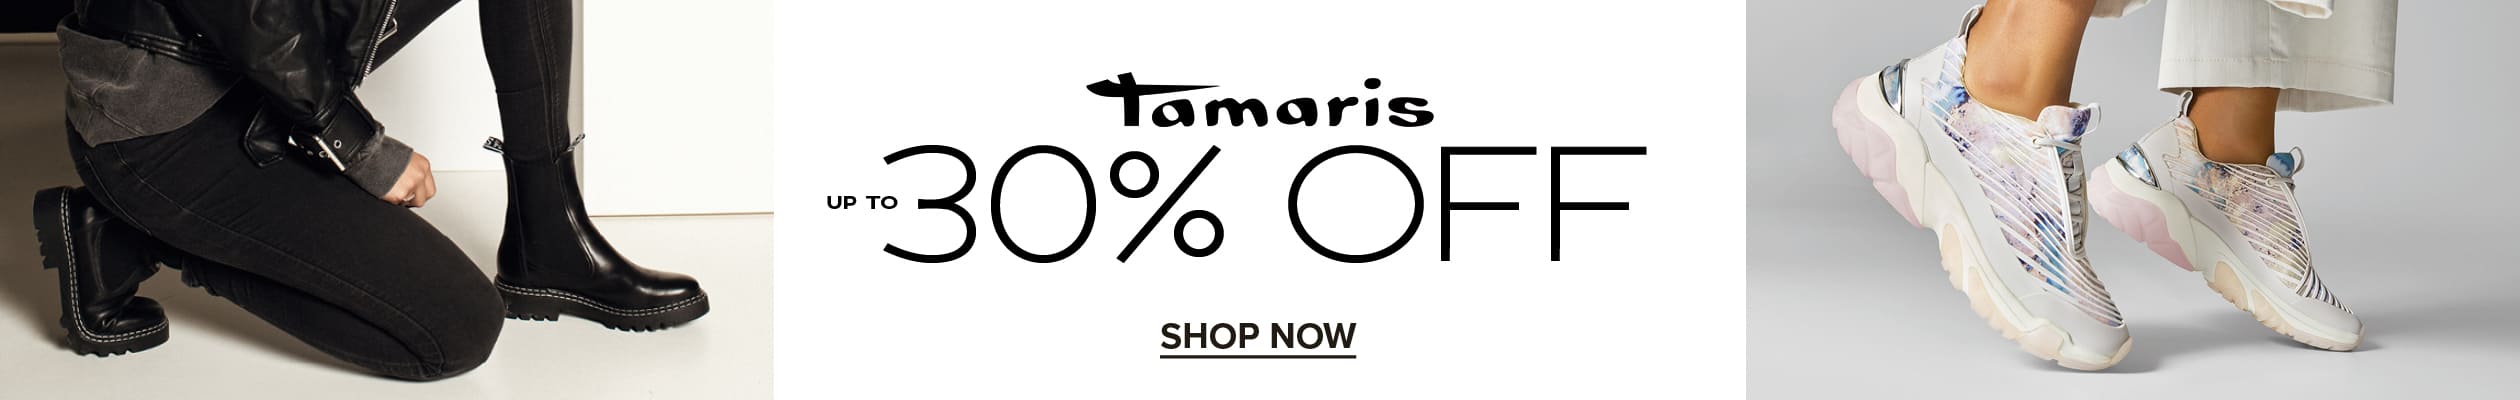 Tamaris 30%